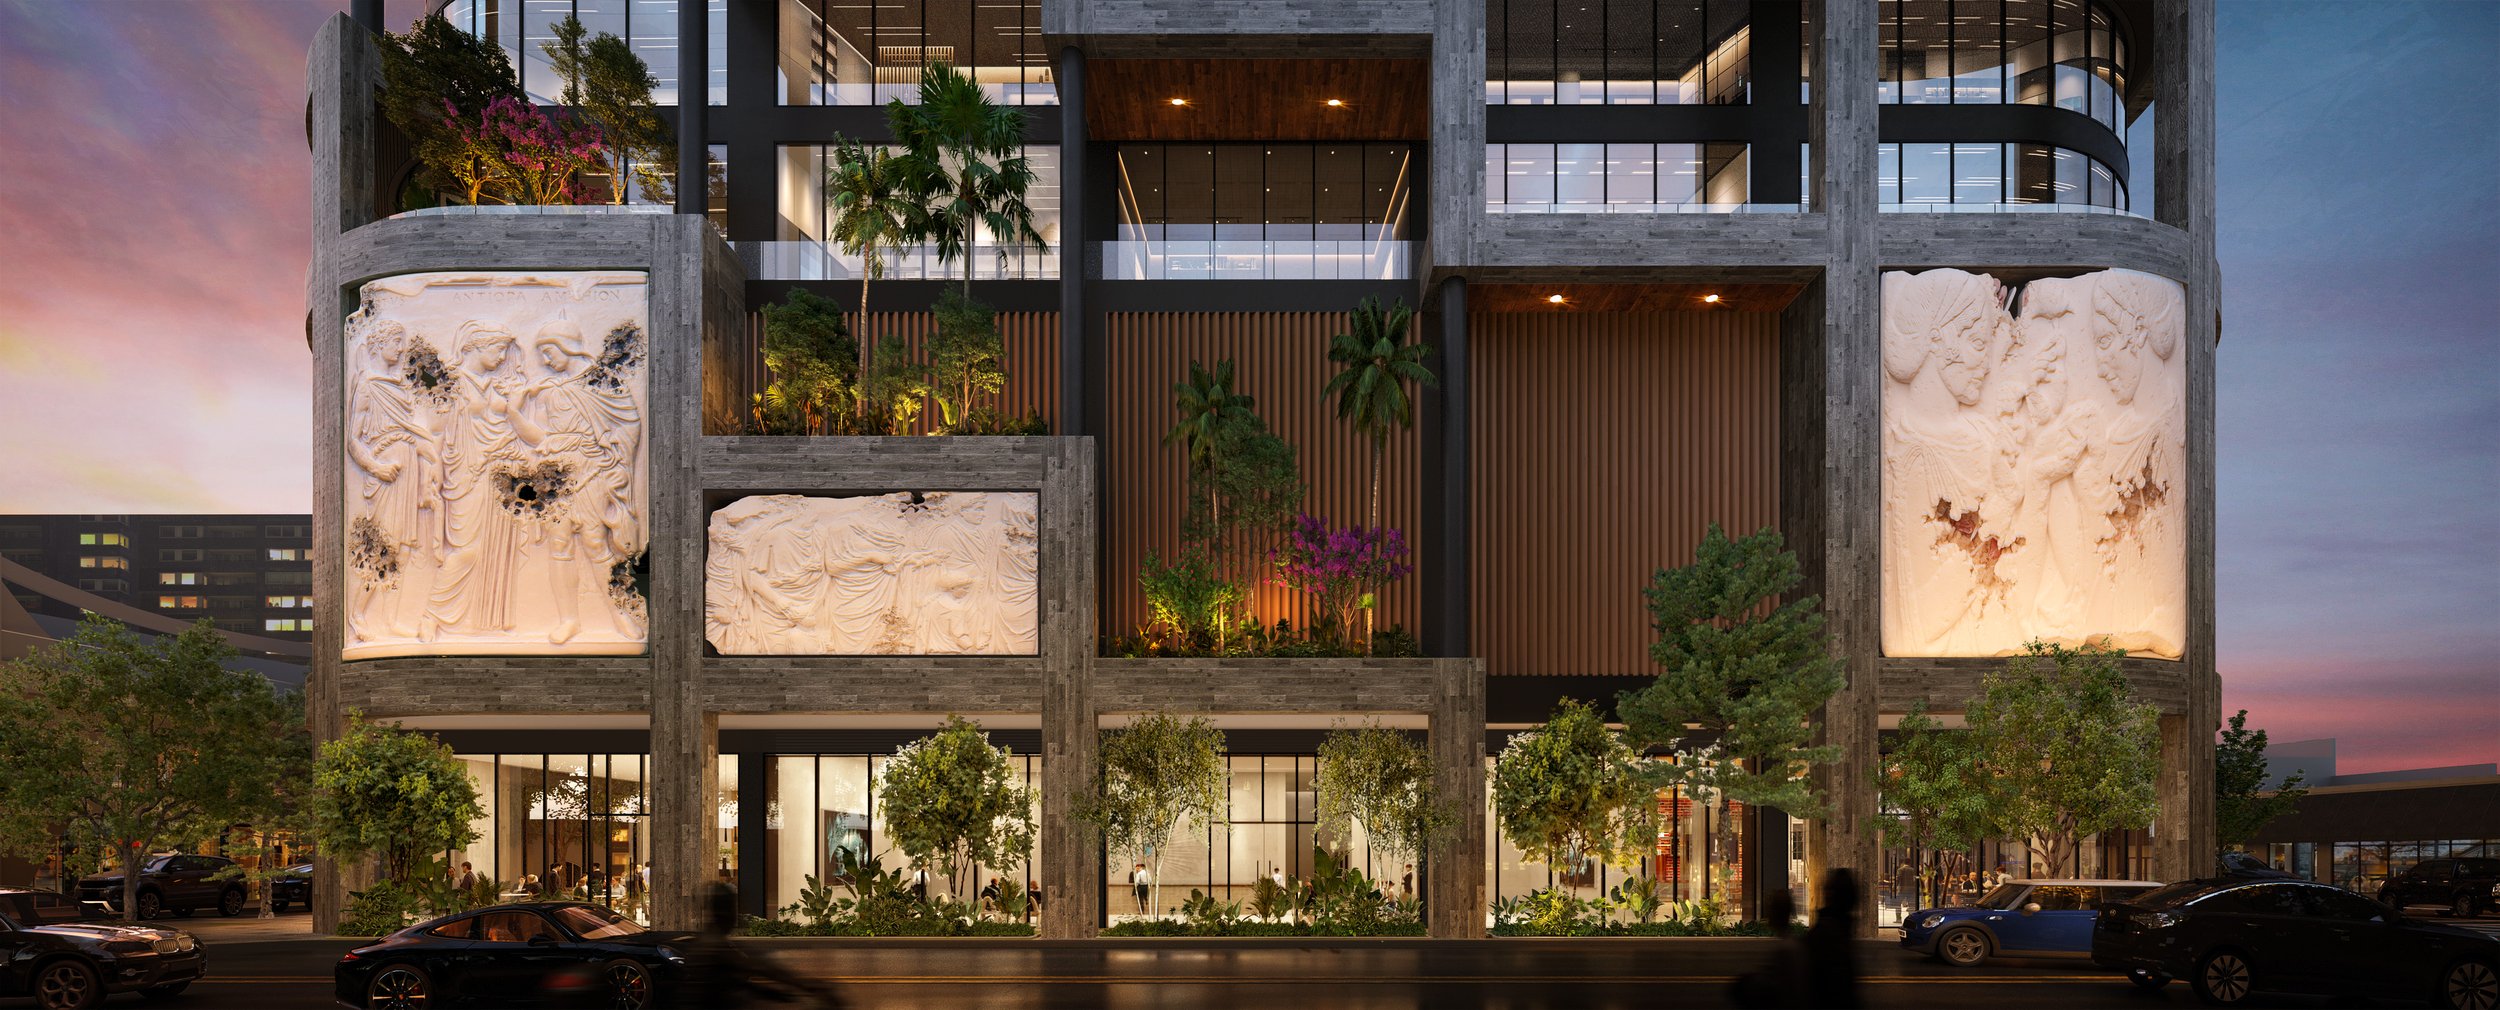 Miami Design District - Wikipedia